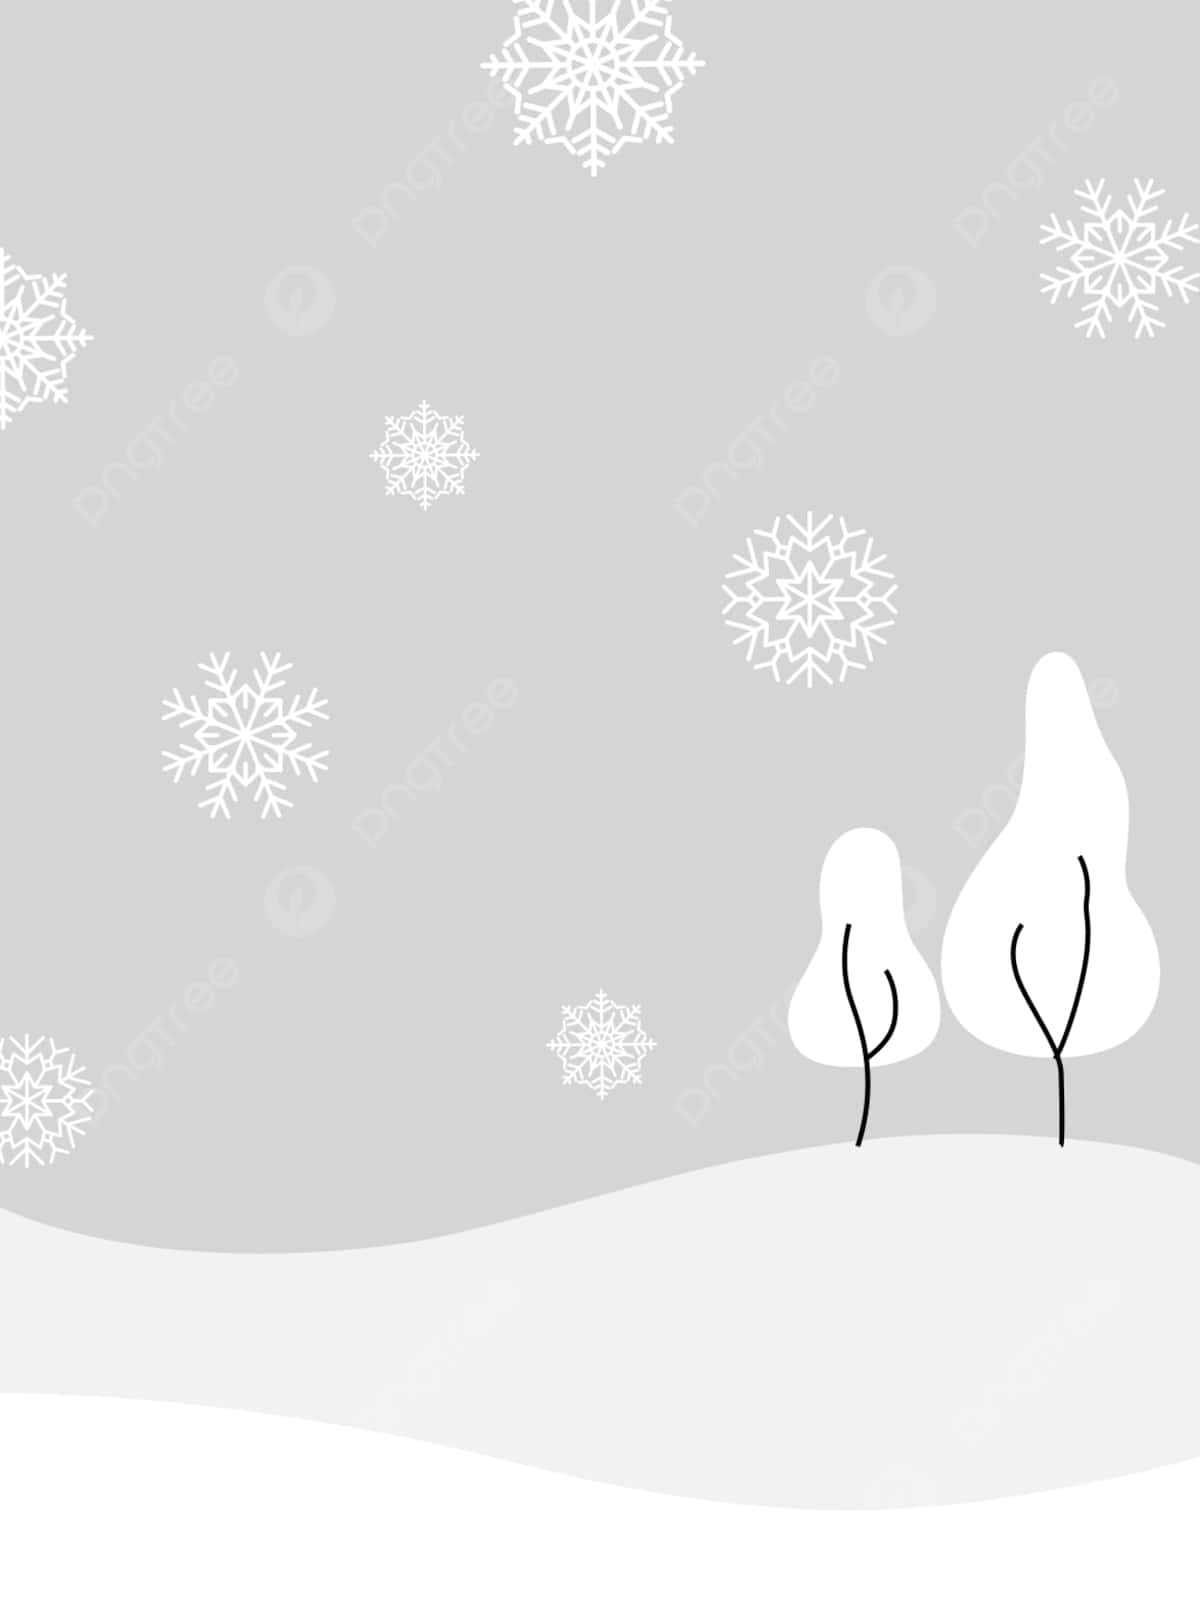 Majestuosoy Aislado: Un Maravilloso Paraíso Invernal Cubierto De Nieve